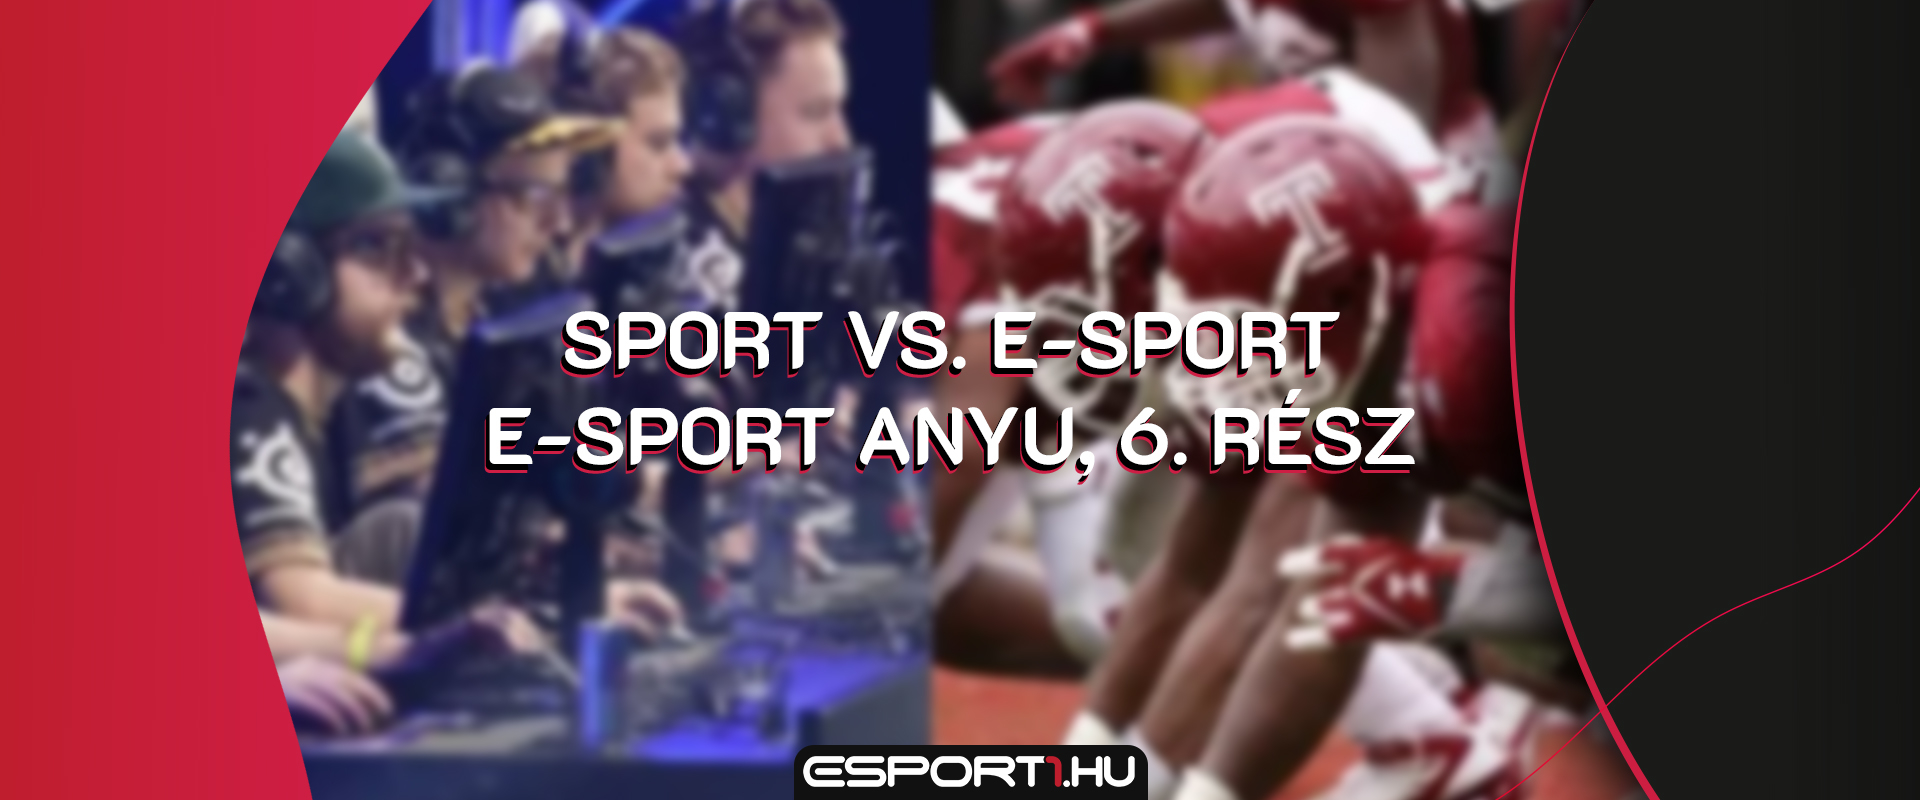 Sport vs. E-sport - Esport Anyu, 6. rész